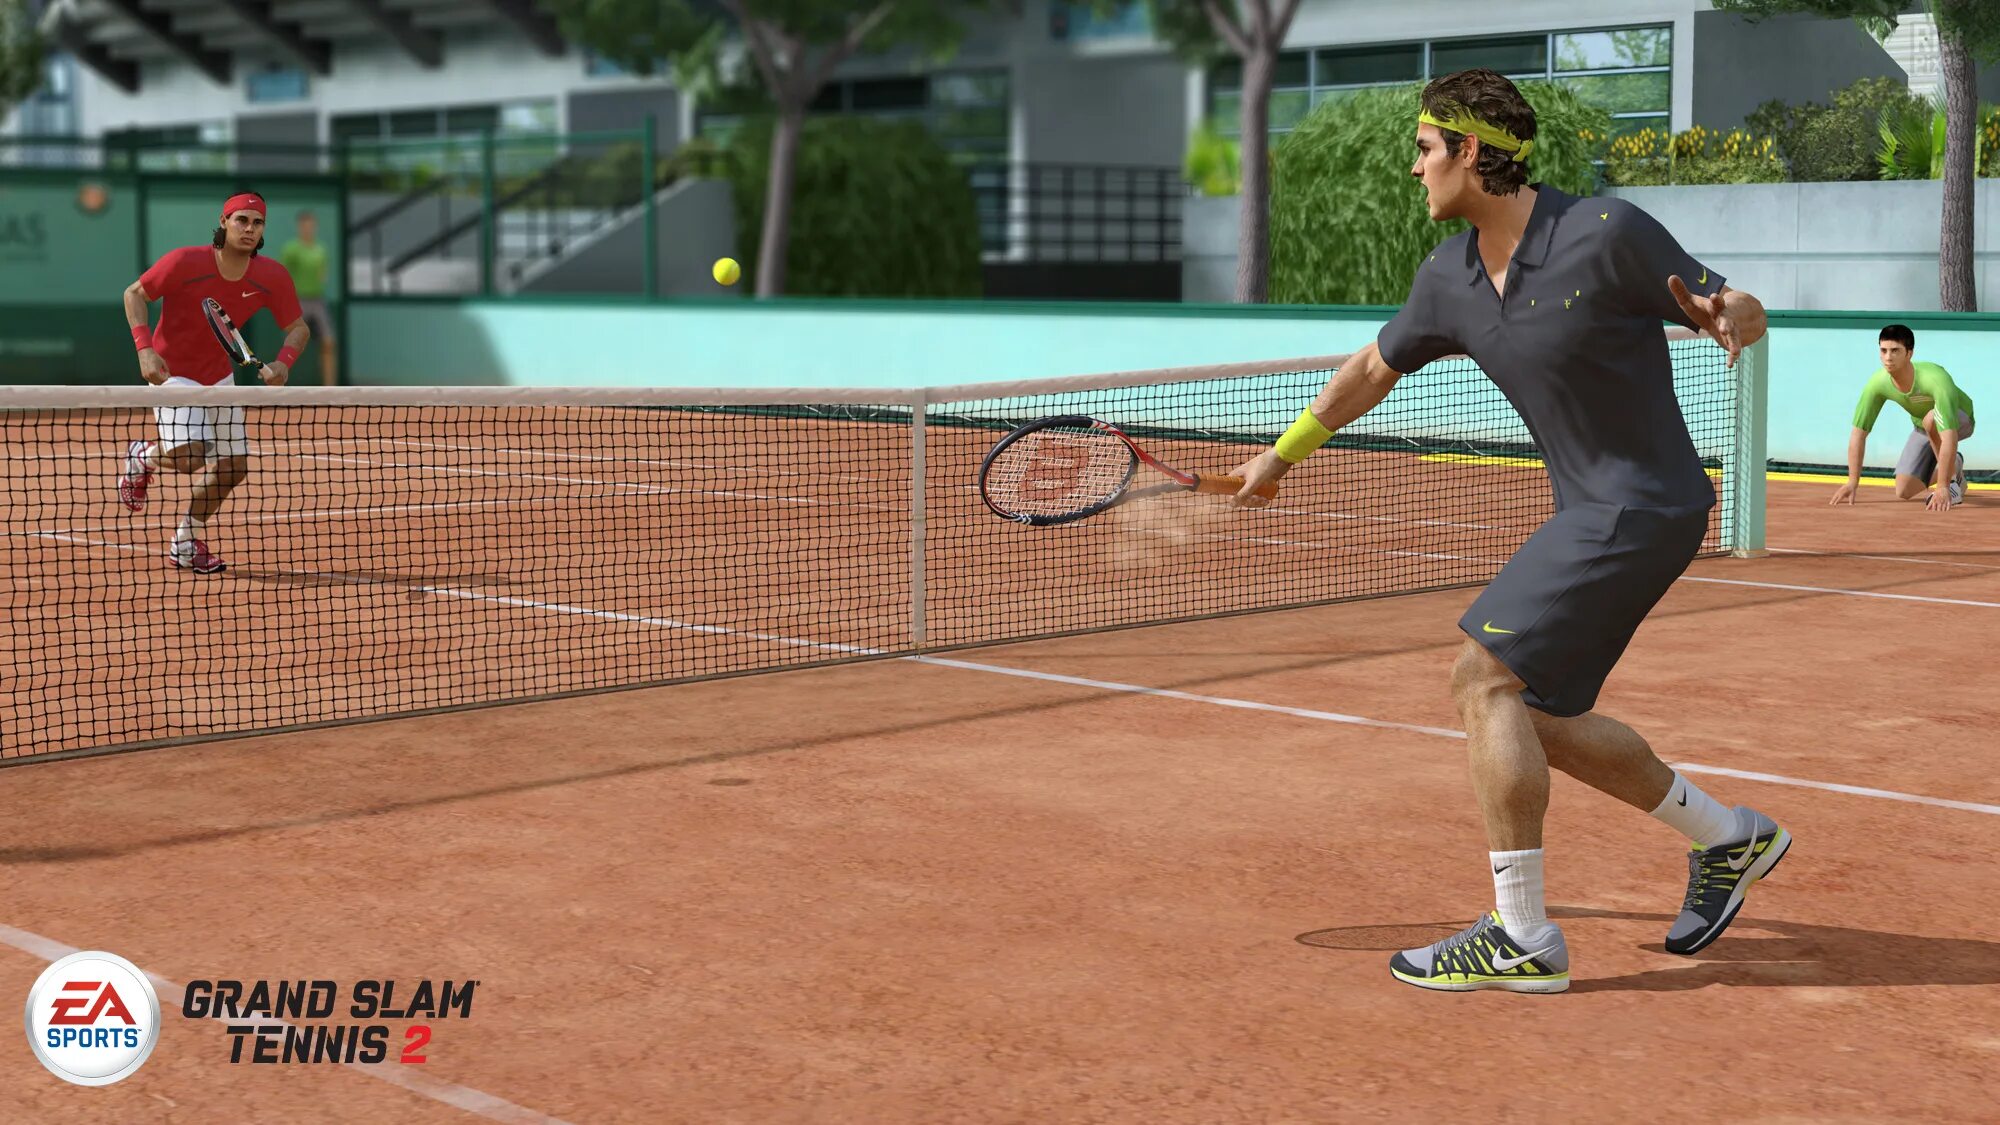 Гранд-слэм теннис. Grand Slam Tennis 2. Игра в теннис. Спорт теннис. Игра теннис турнир